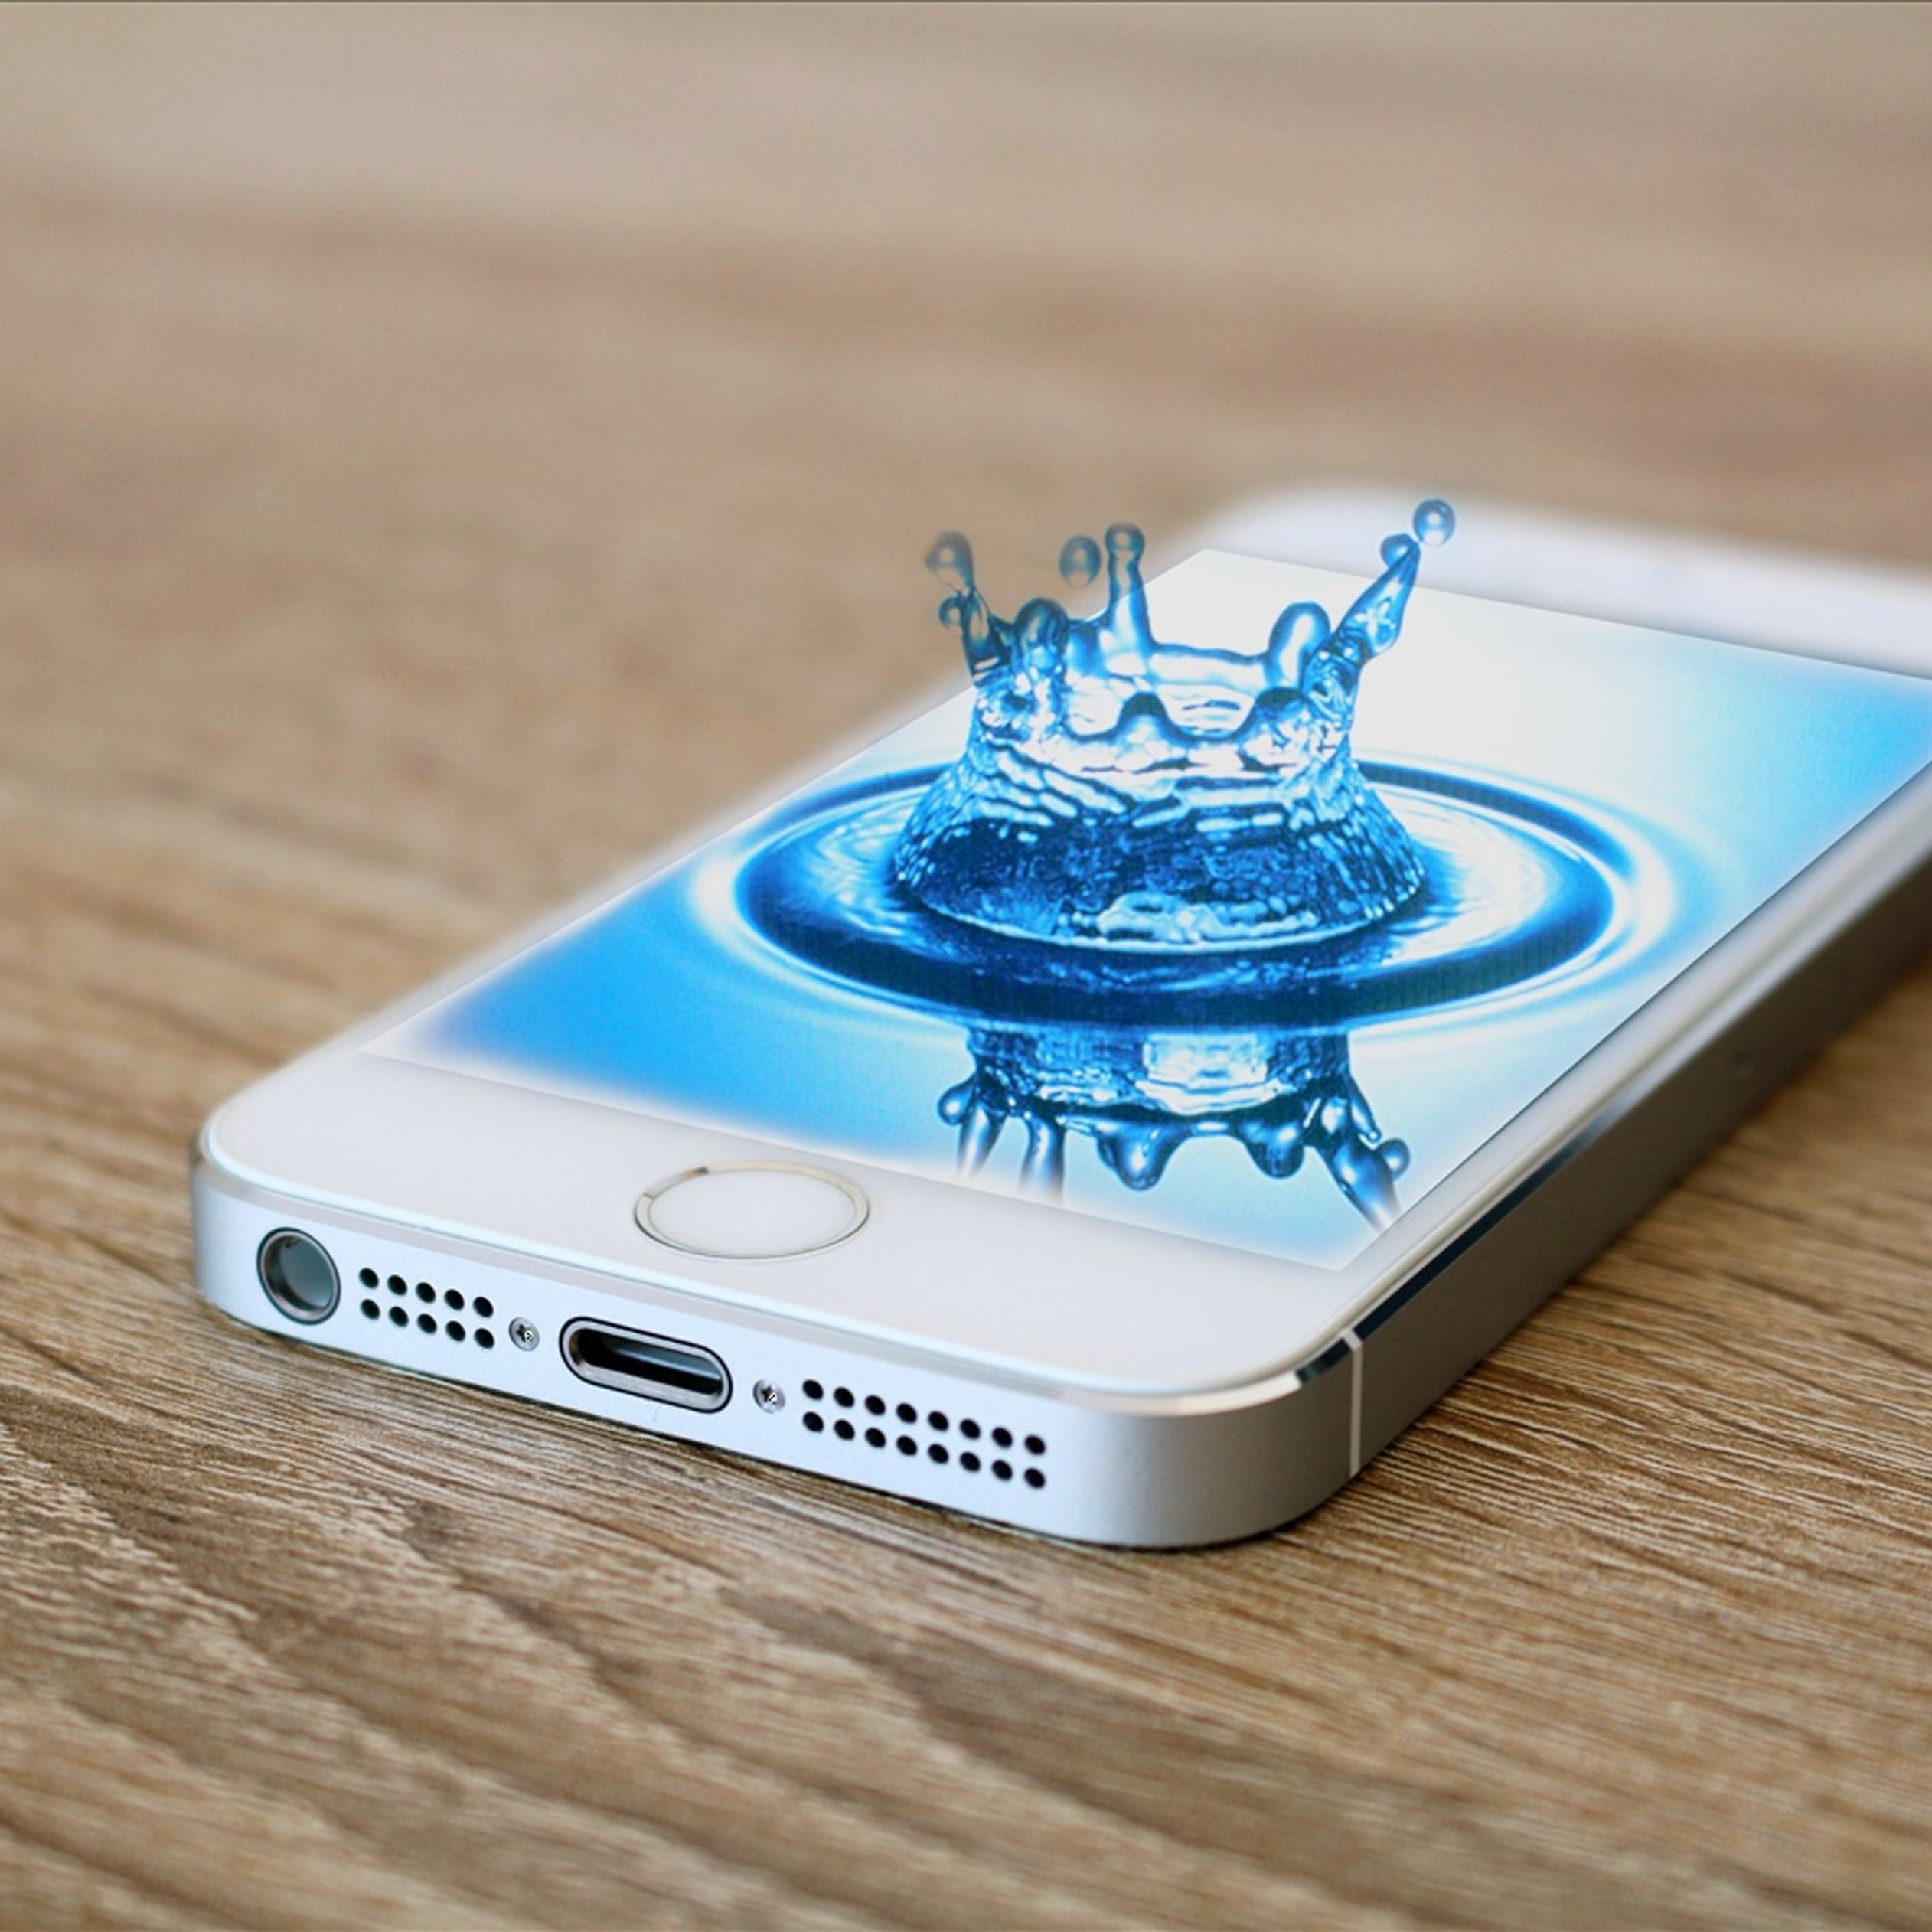 Splash water drop in iPhone 5s phone - Abstract 3D wallpaper